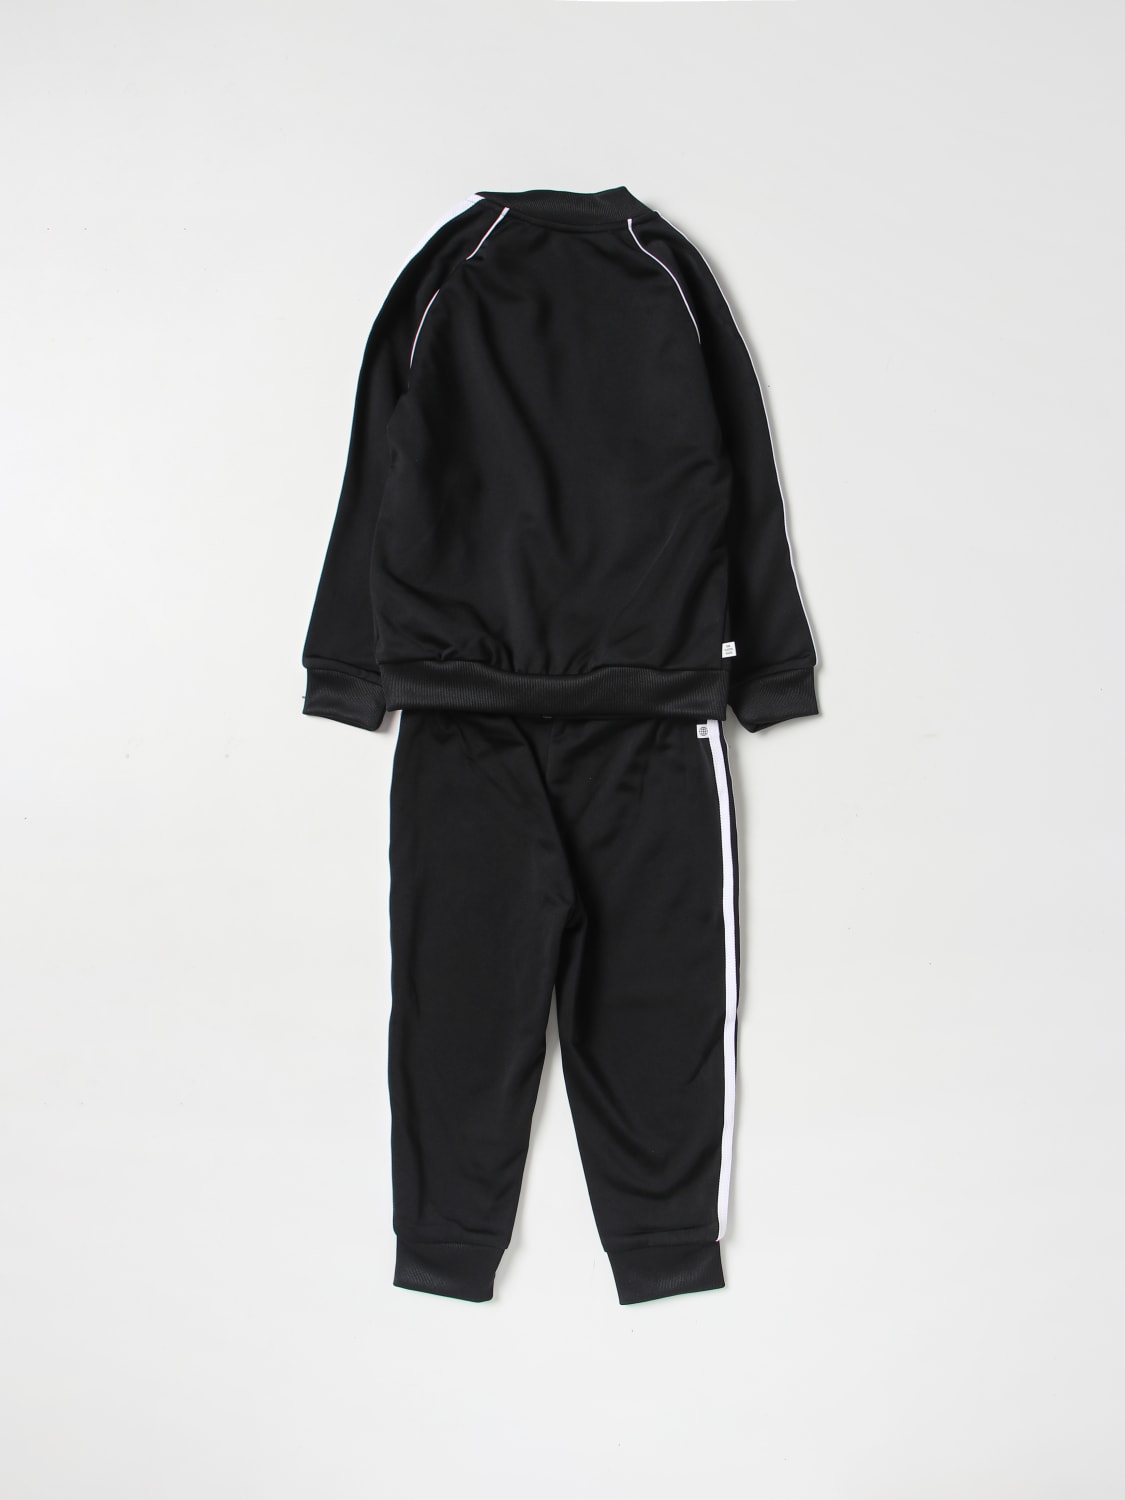 Pedagogie ongebruikt In beweging ADIDAS ORIGINALS: jumpsuit for baby - Black | Adidas Originals jumpsuit  GN8441 online on GIGLIO.COM